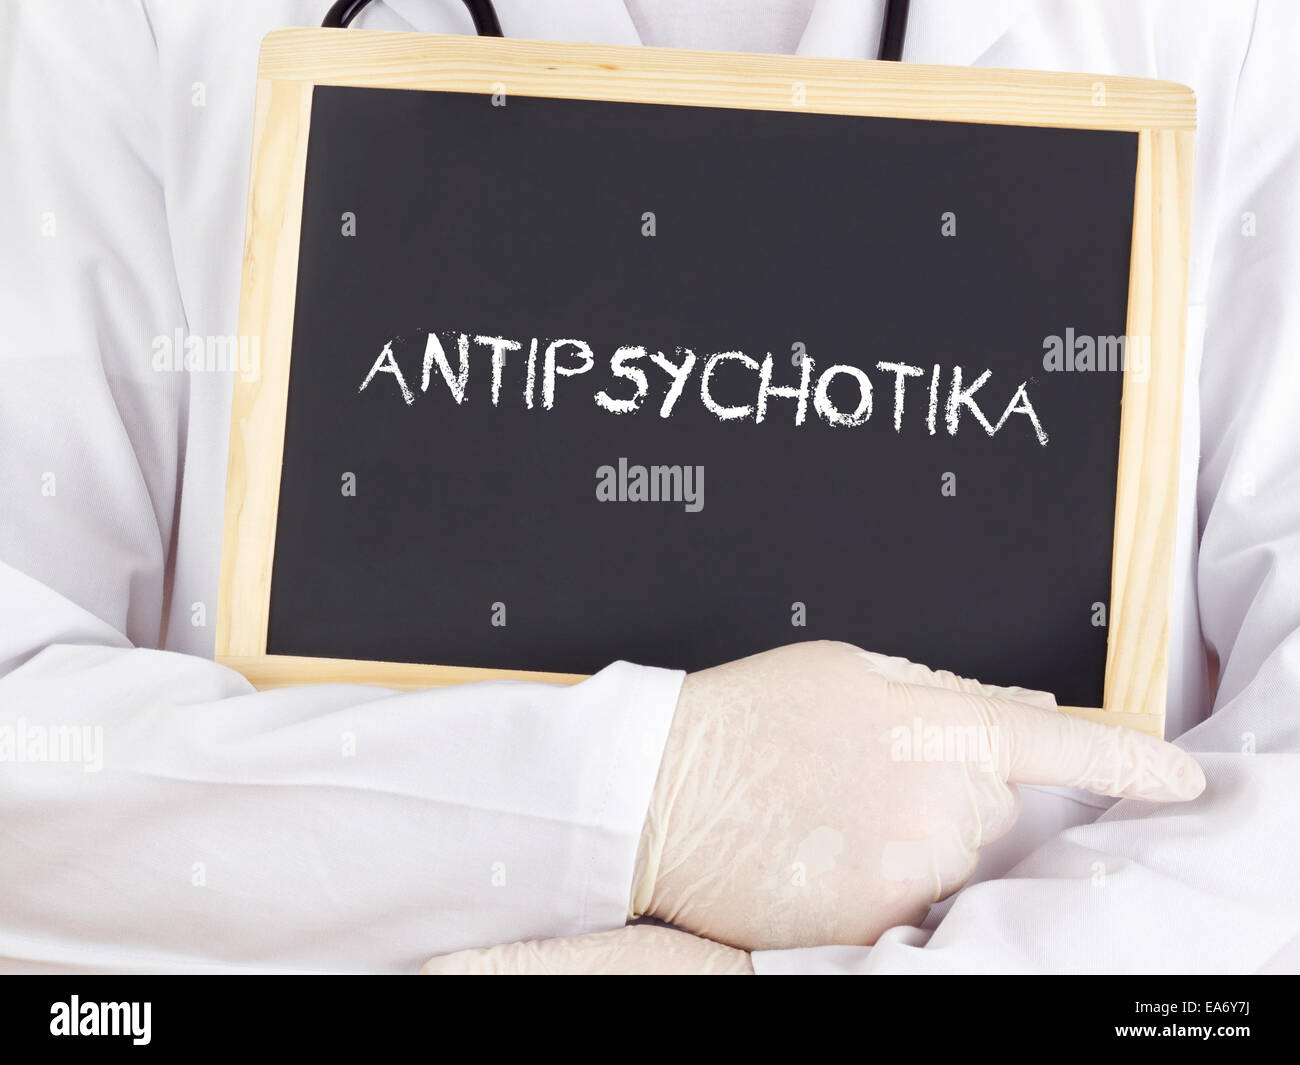 Arzt zeigt Informationen: Antipsychotika in deutscher Sprache Stockfoto